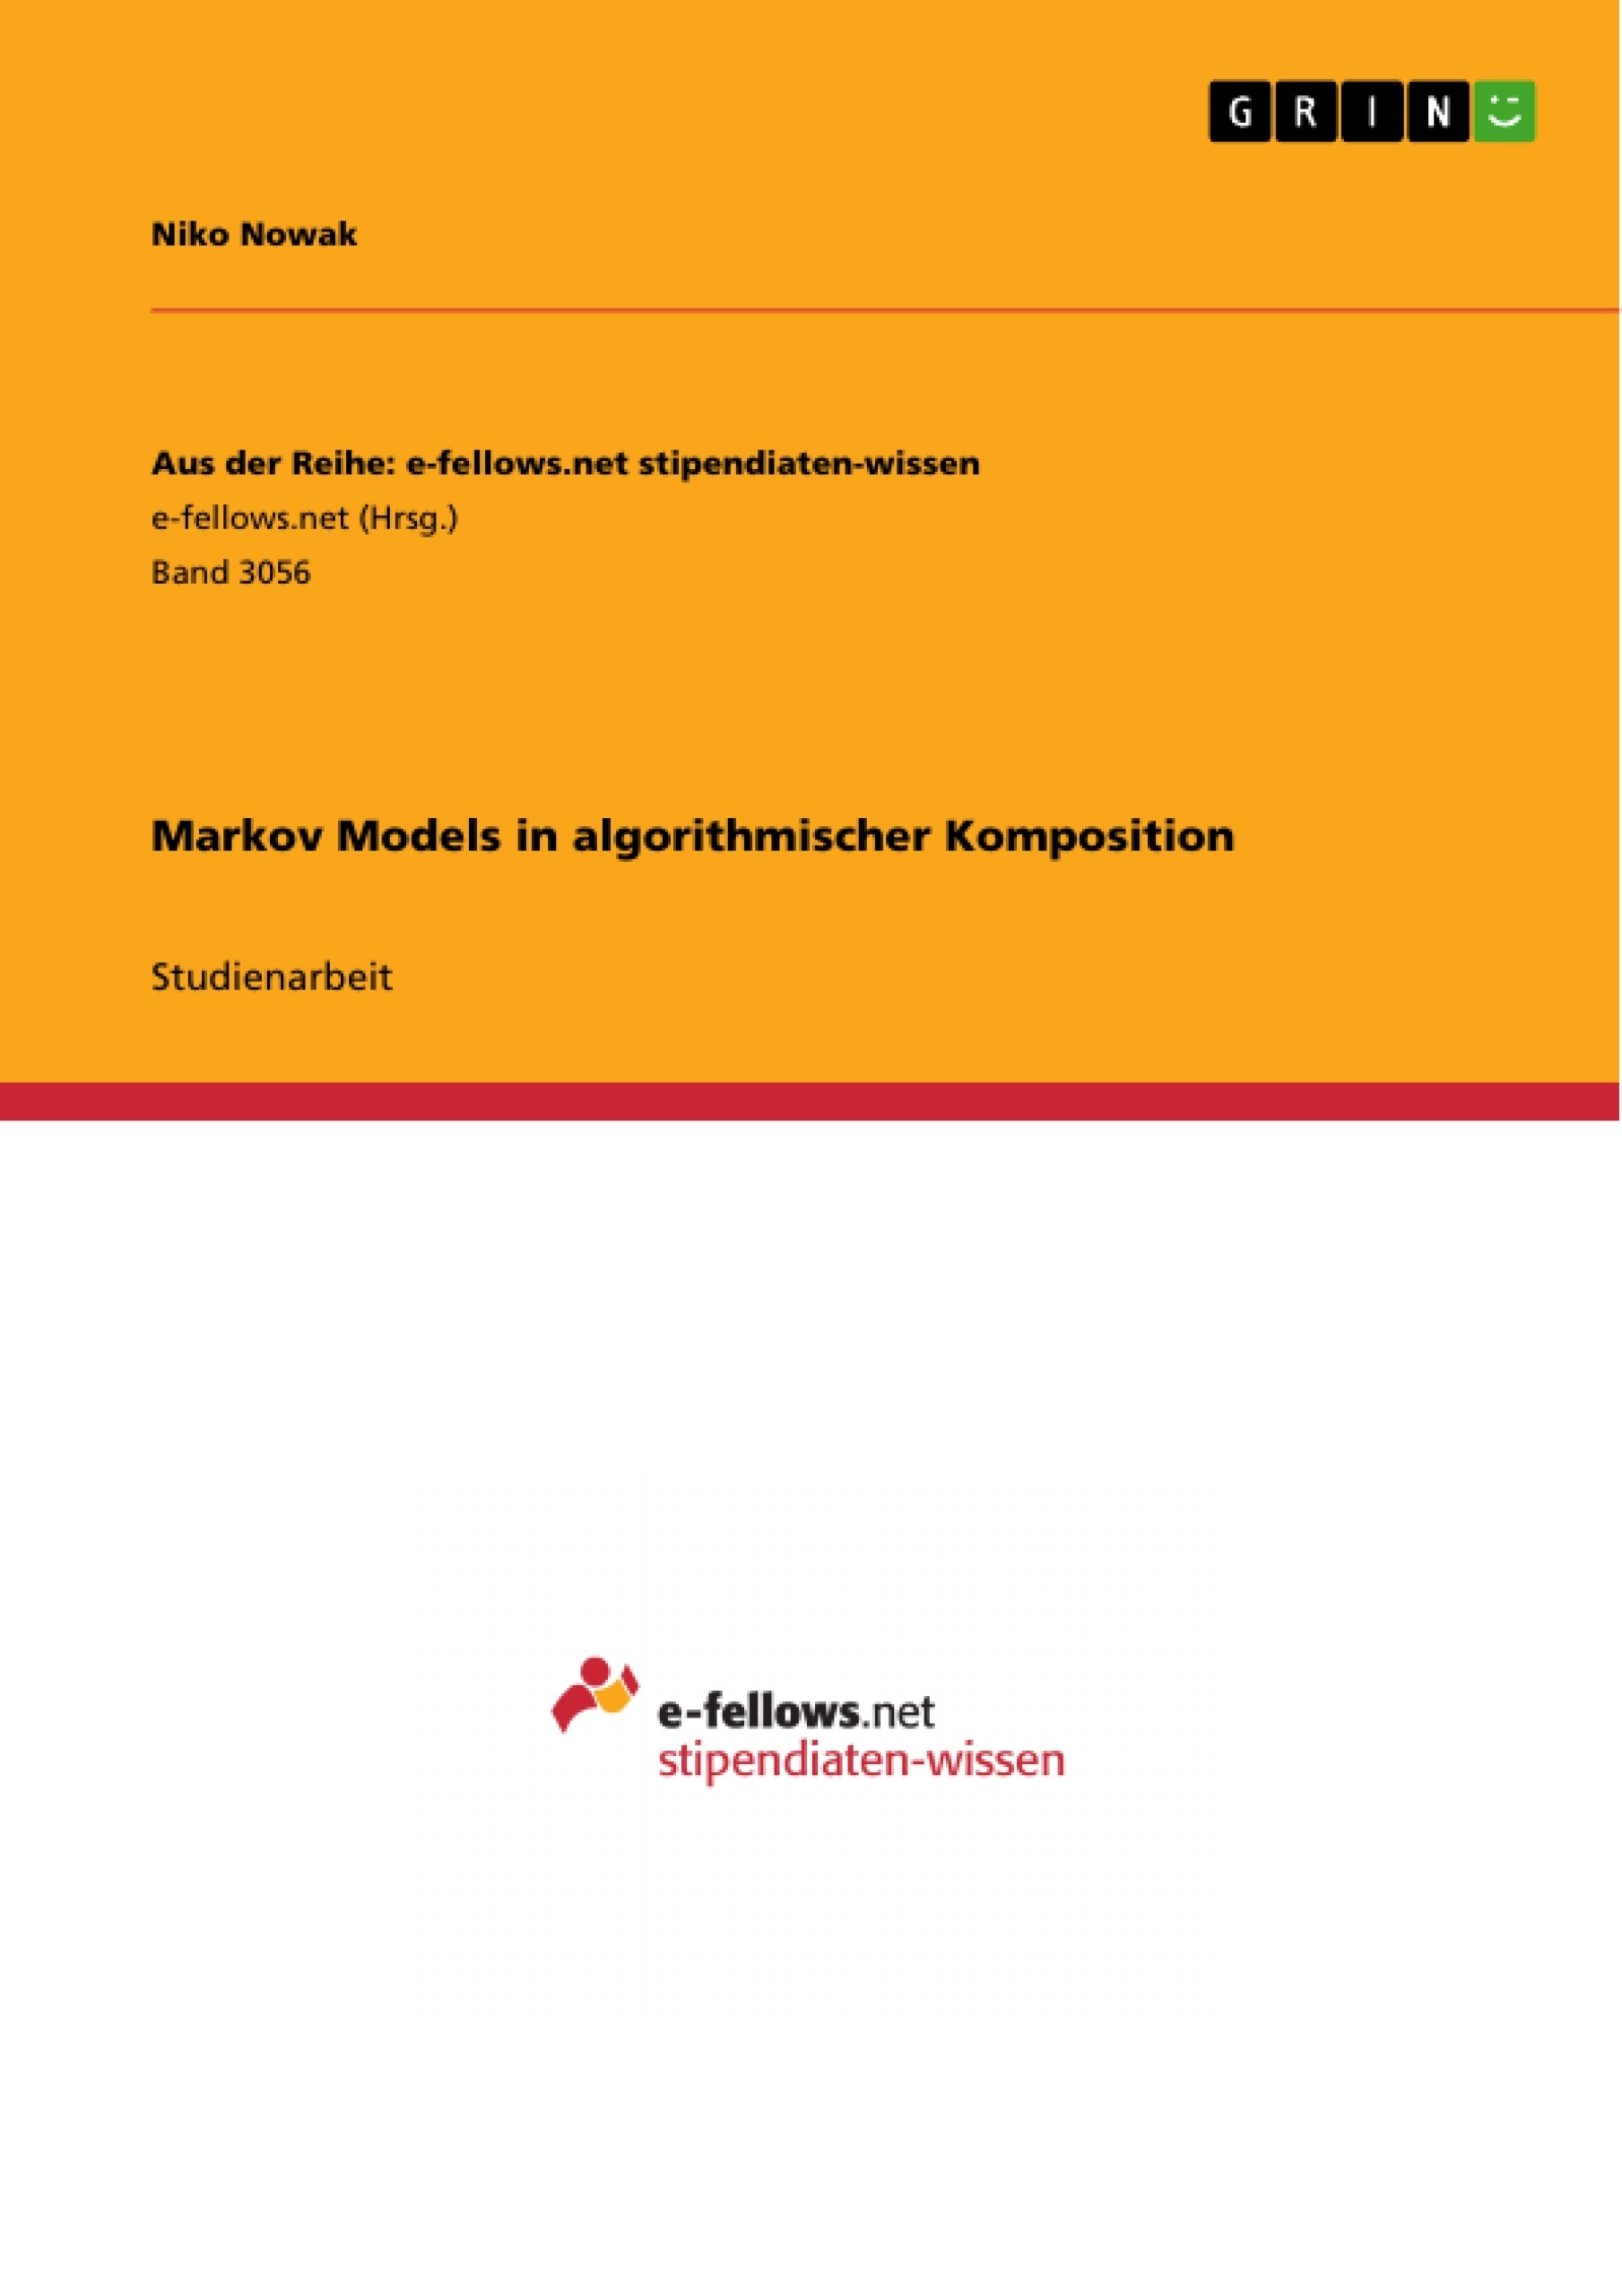 Title: Markov Models in algorithmischer Komposition